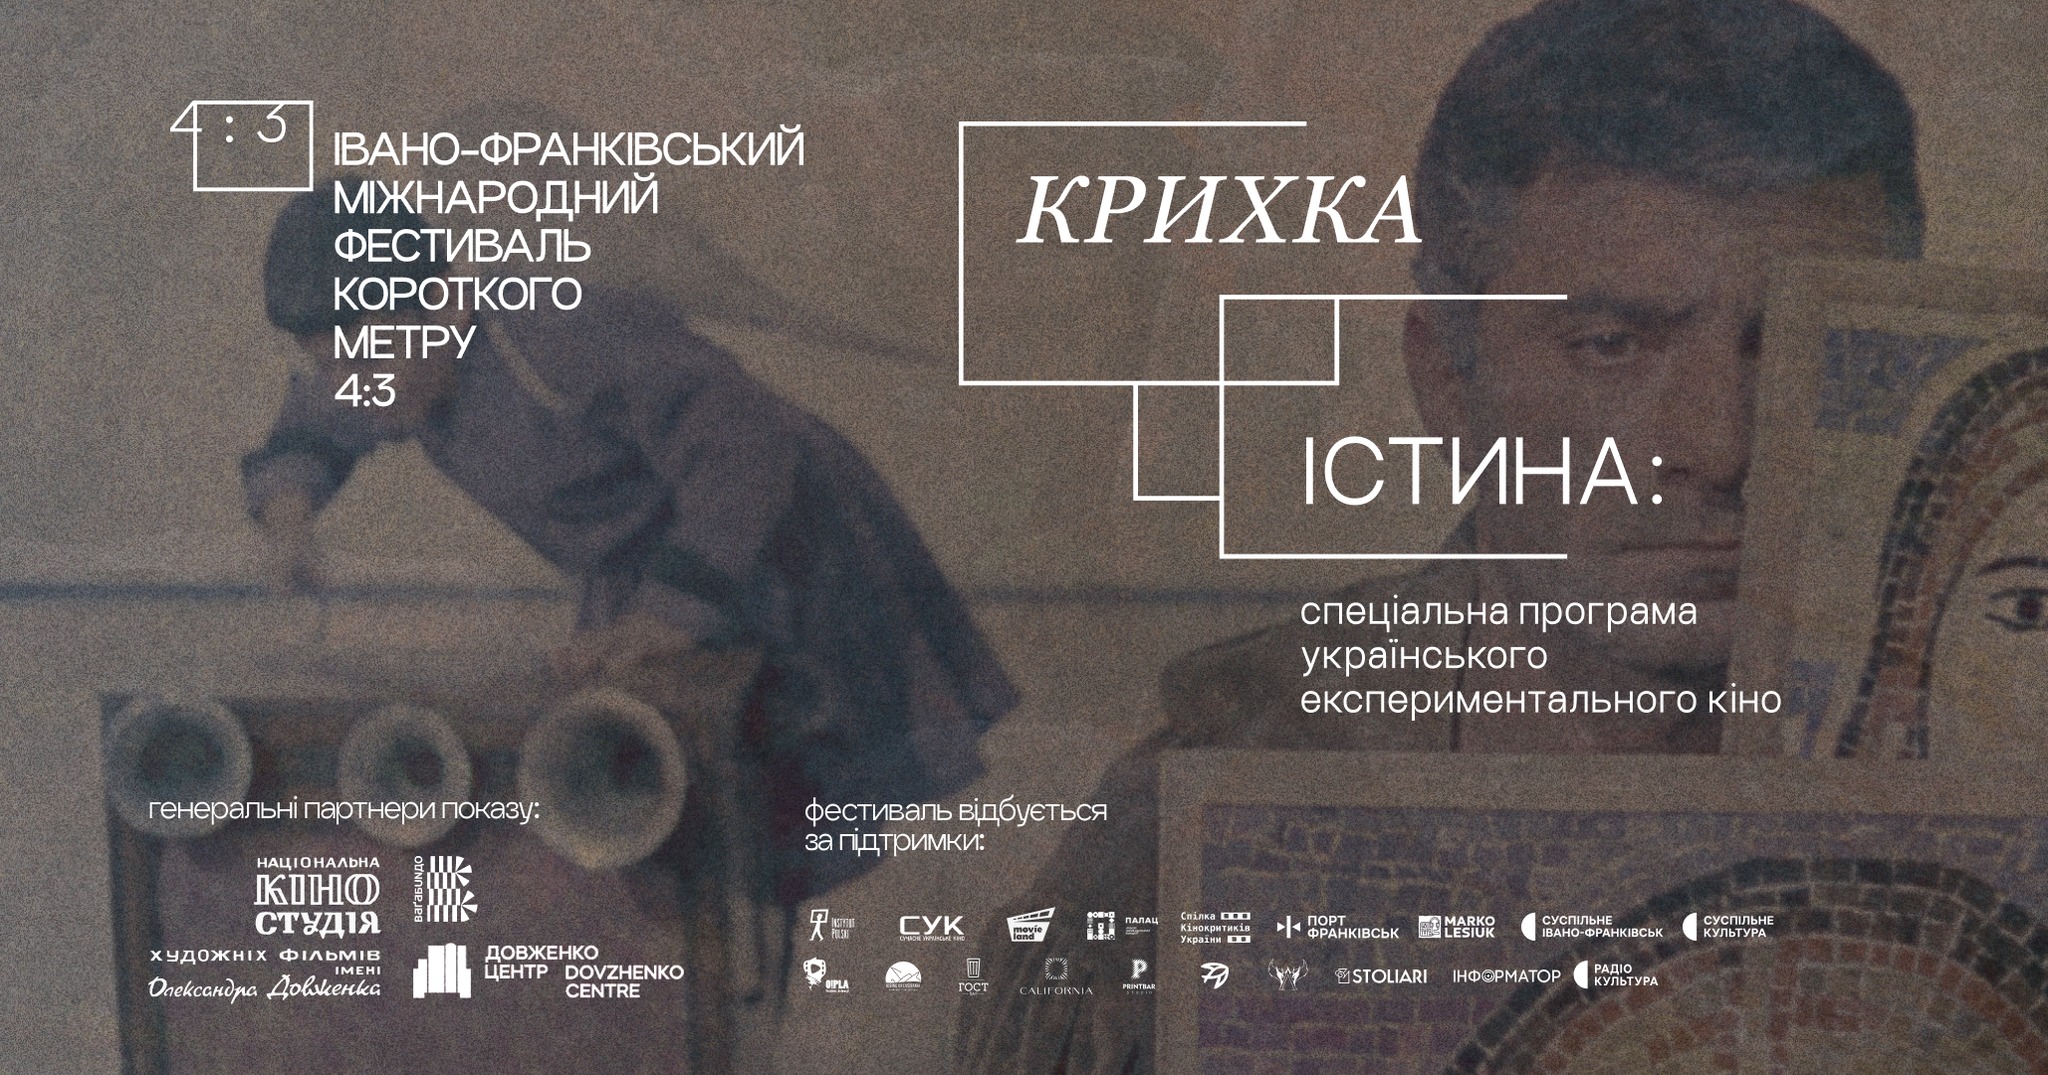 Крихка істина: спеціальна програма українського експериментального кіно